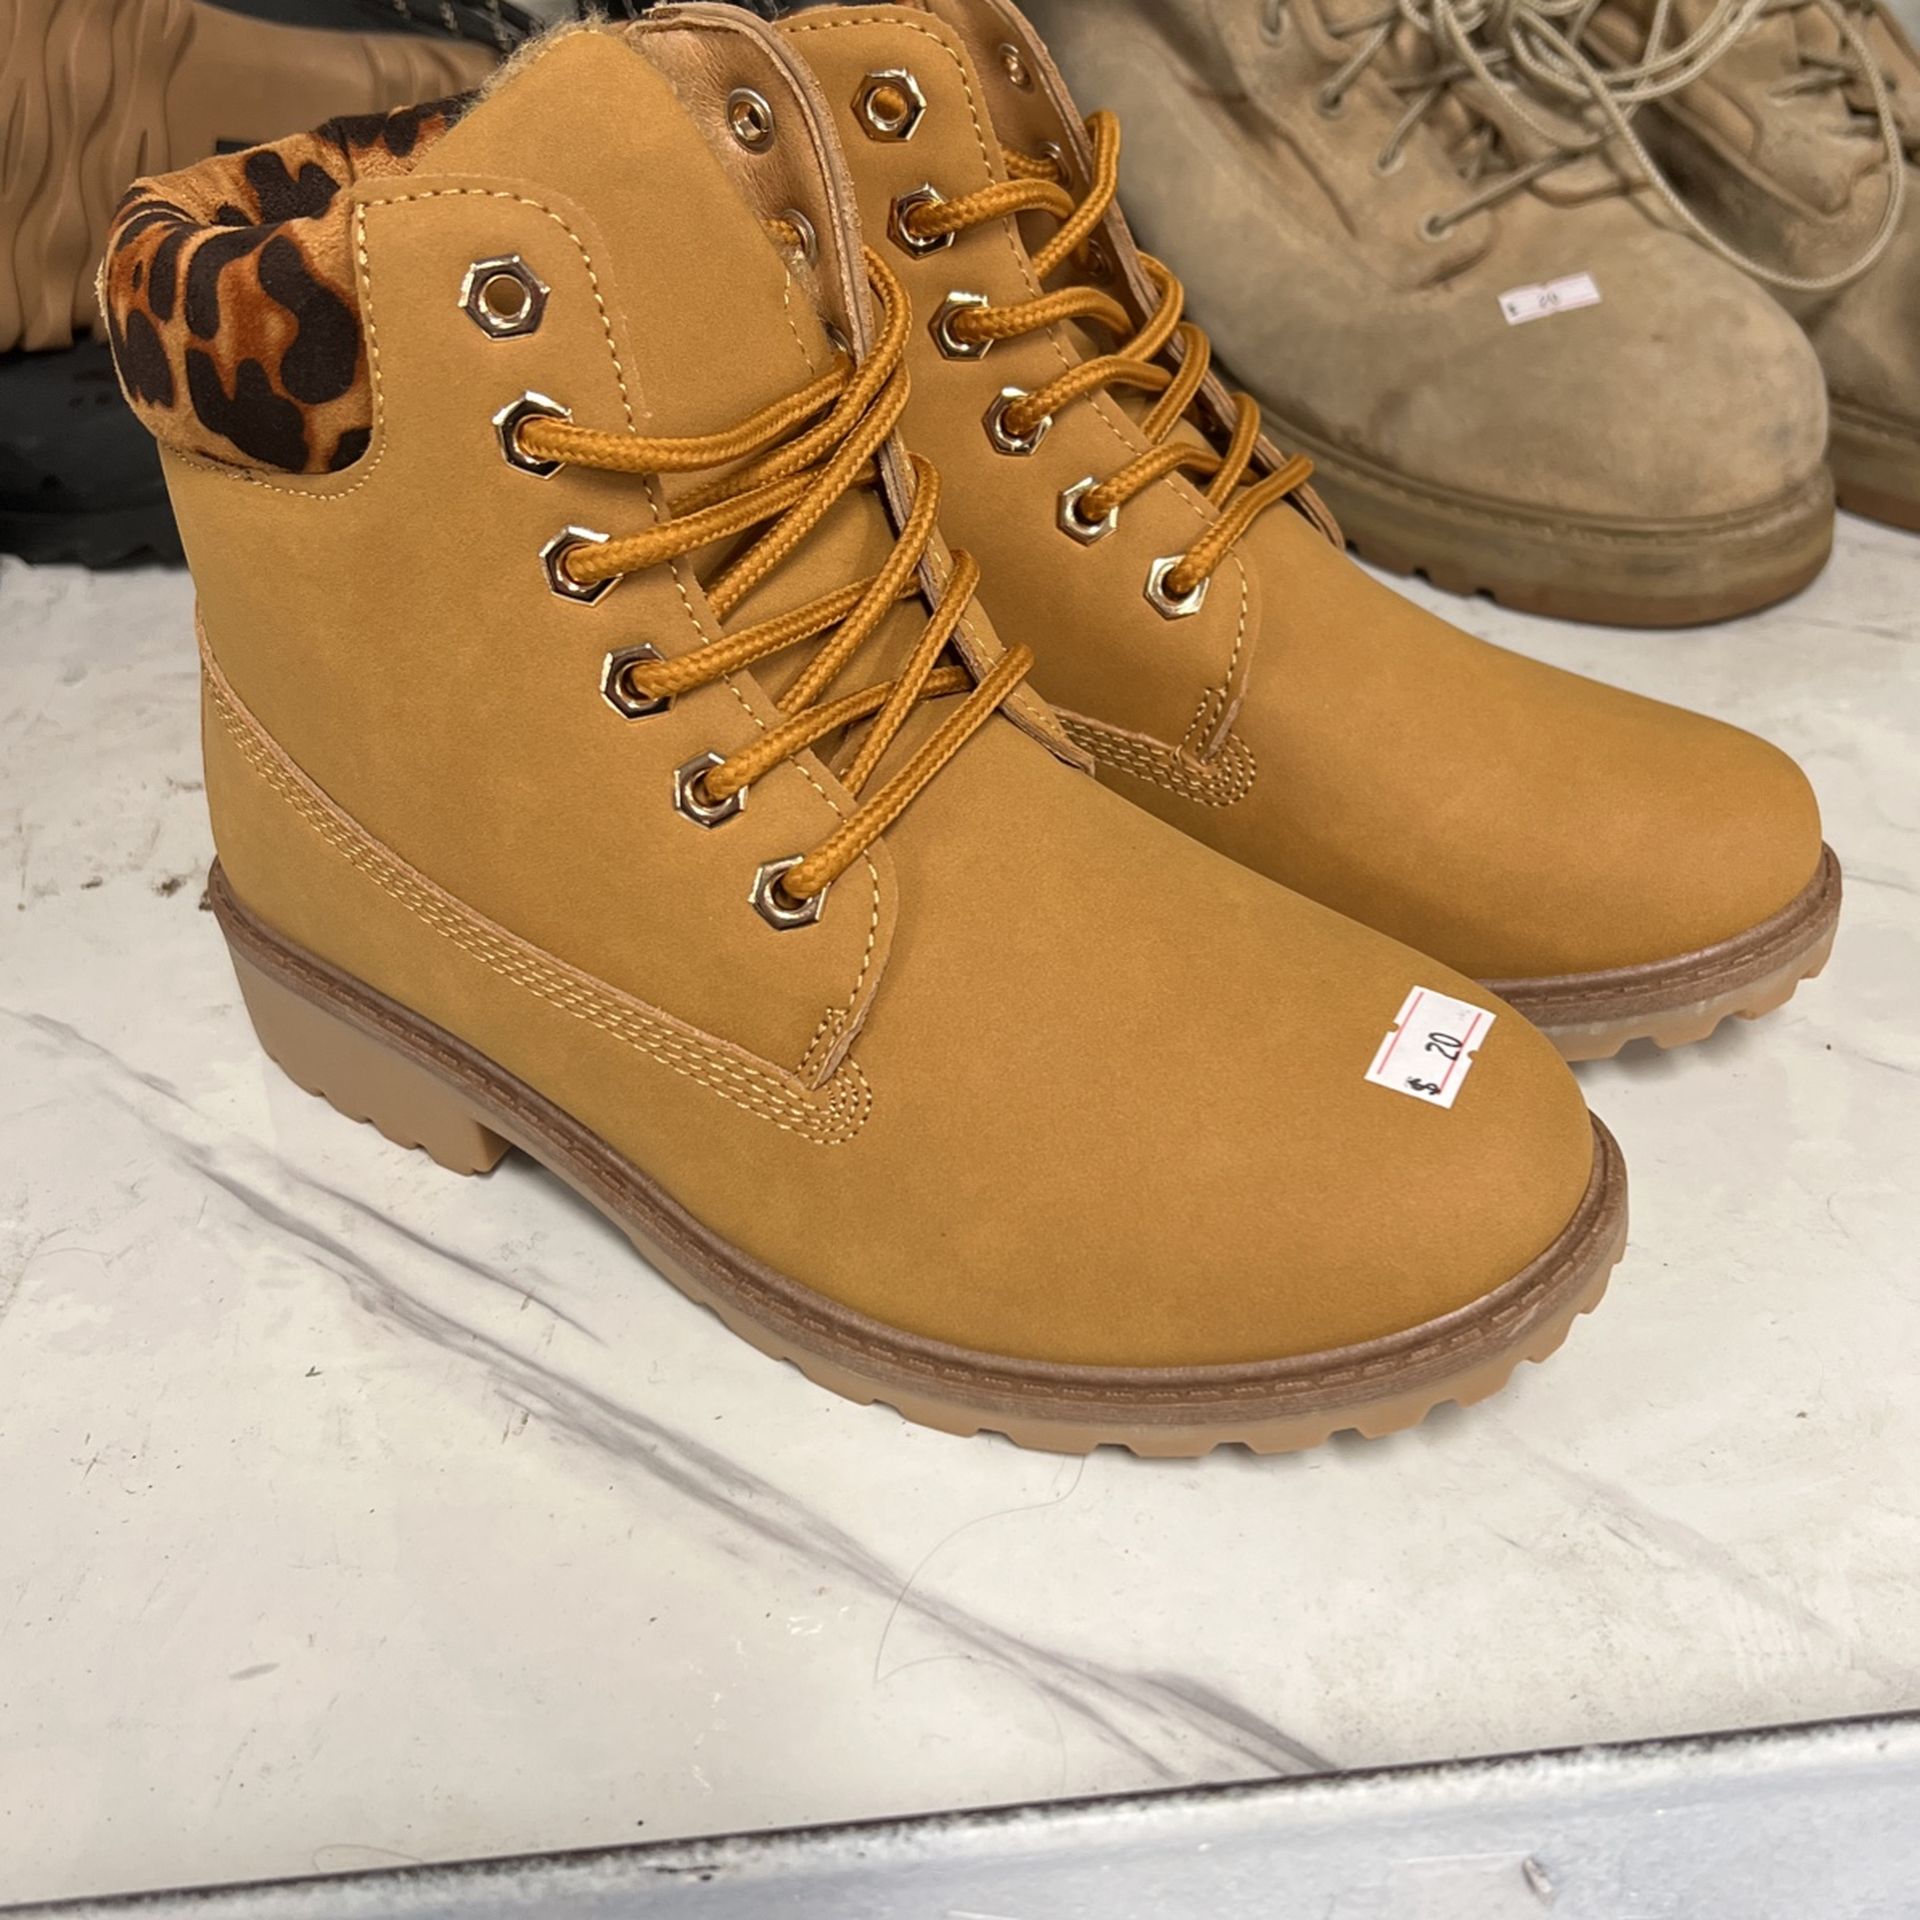 Timberland Like Women’s Boots- Size 7